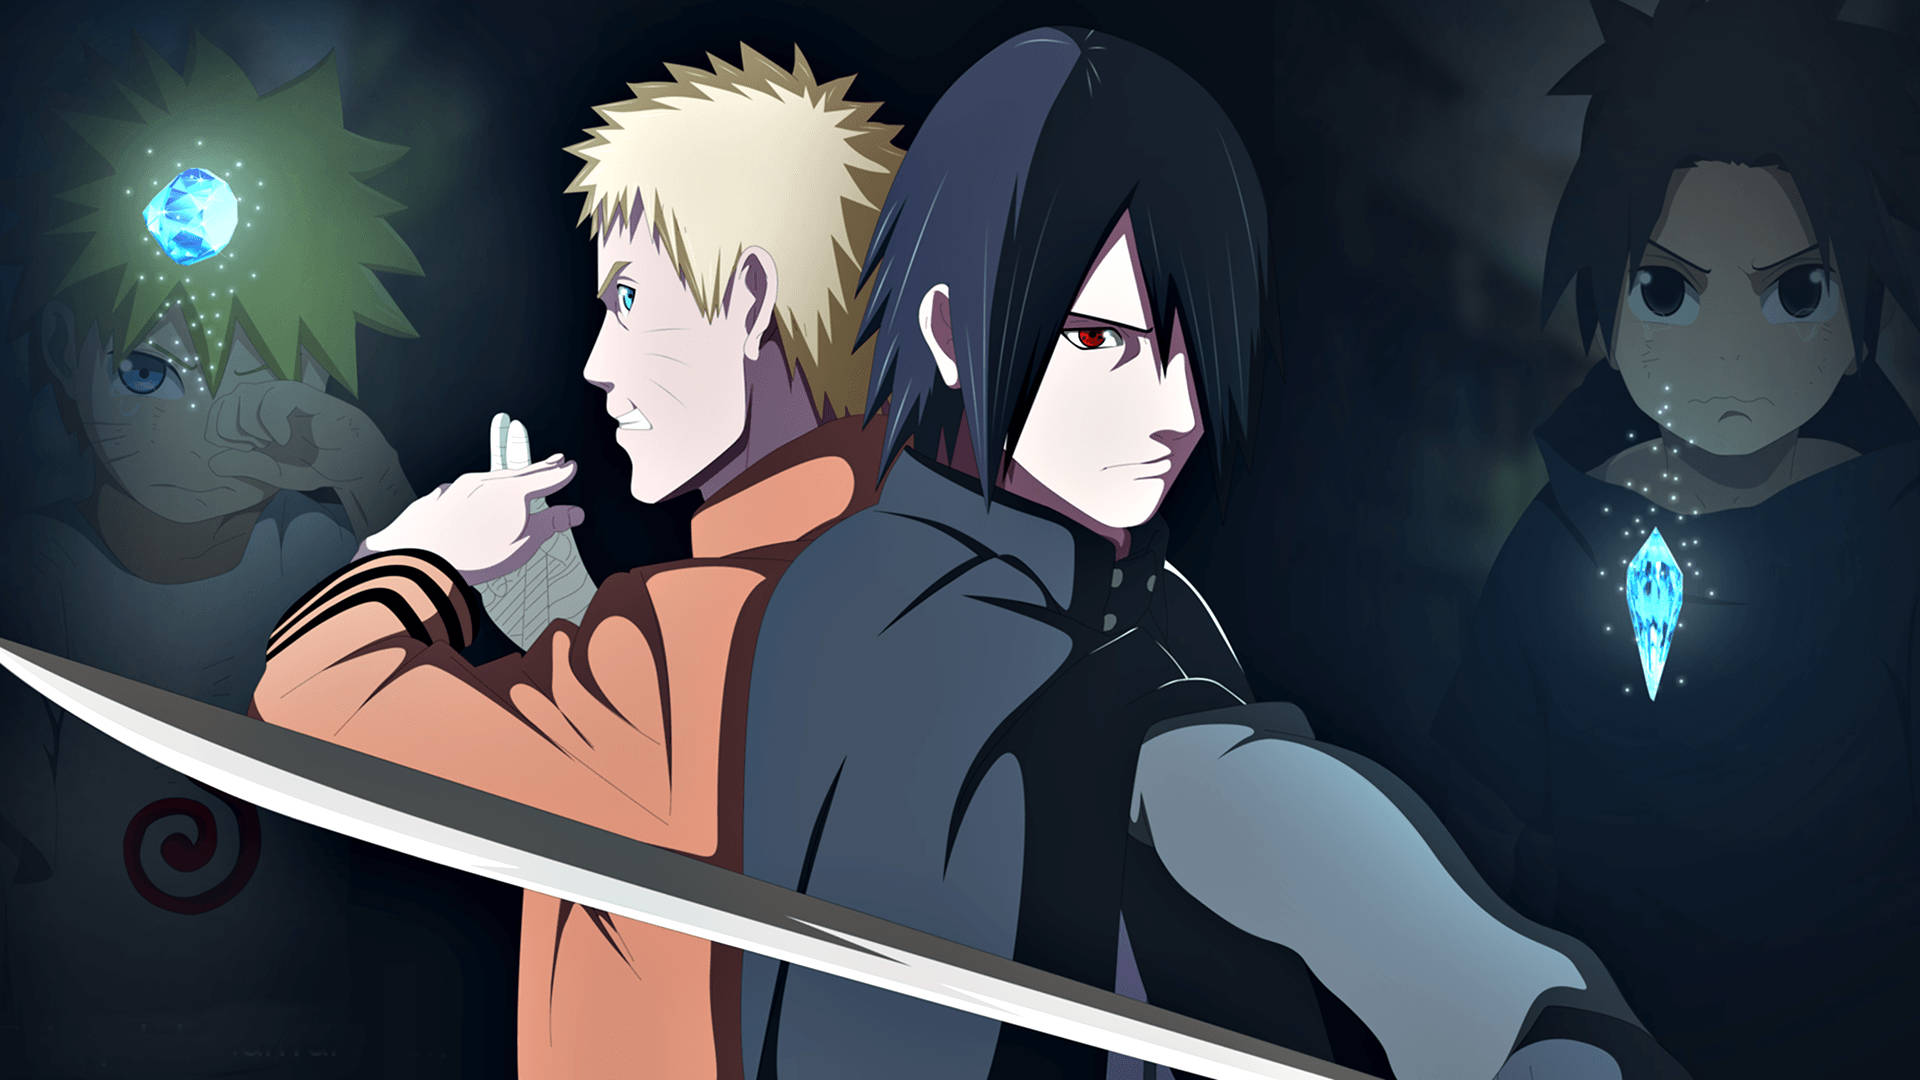 Anime Naruto And Sasuke Fighting Together Wallpaper